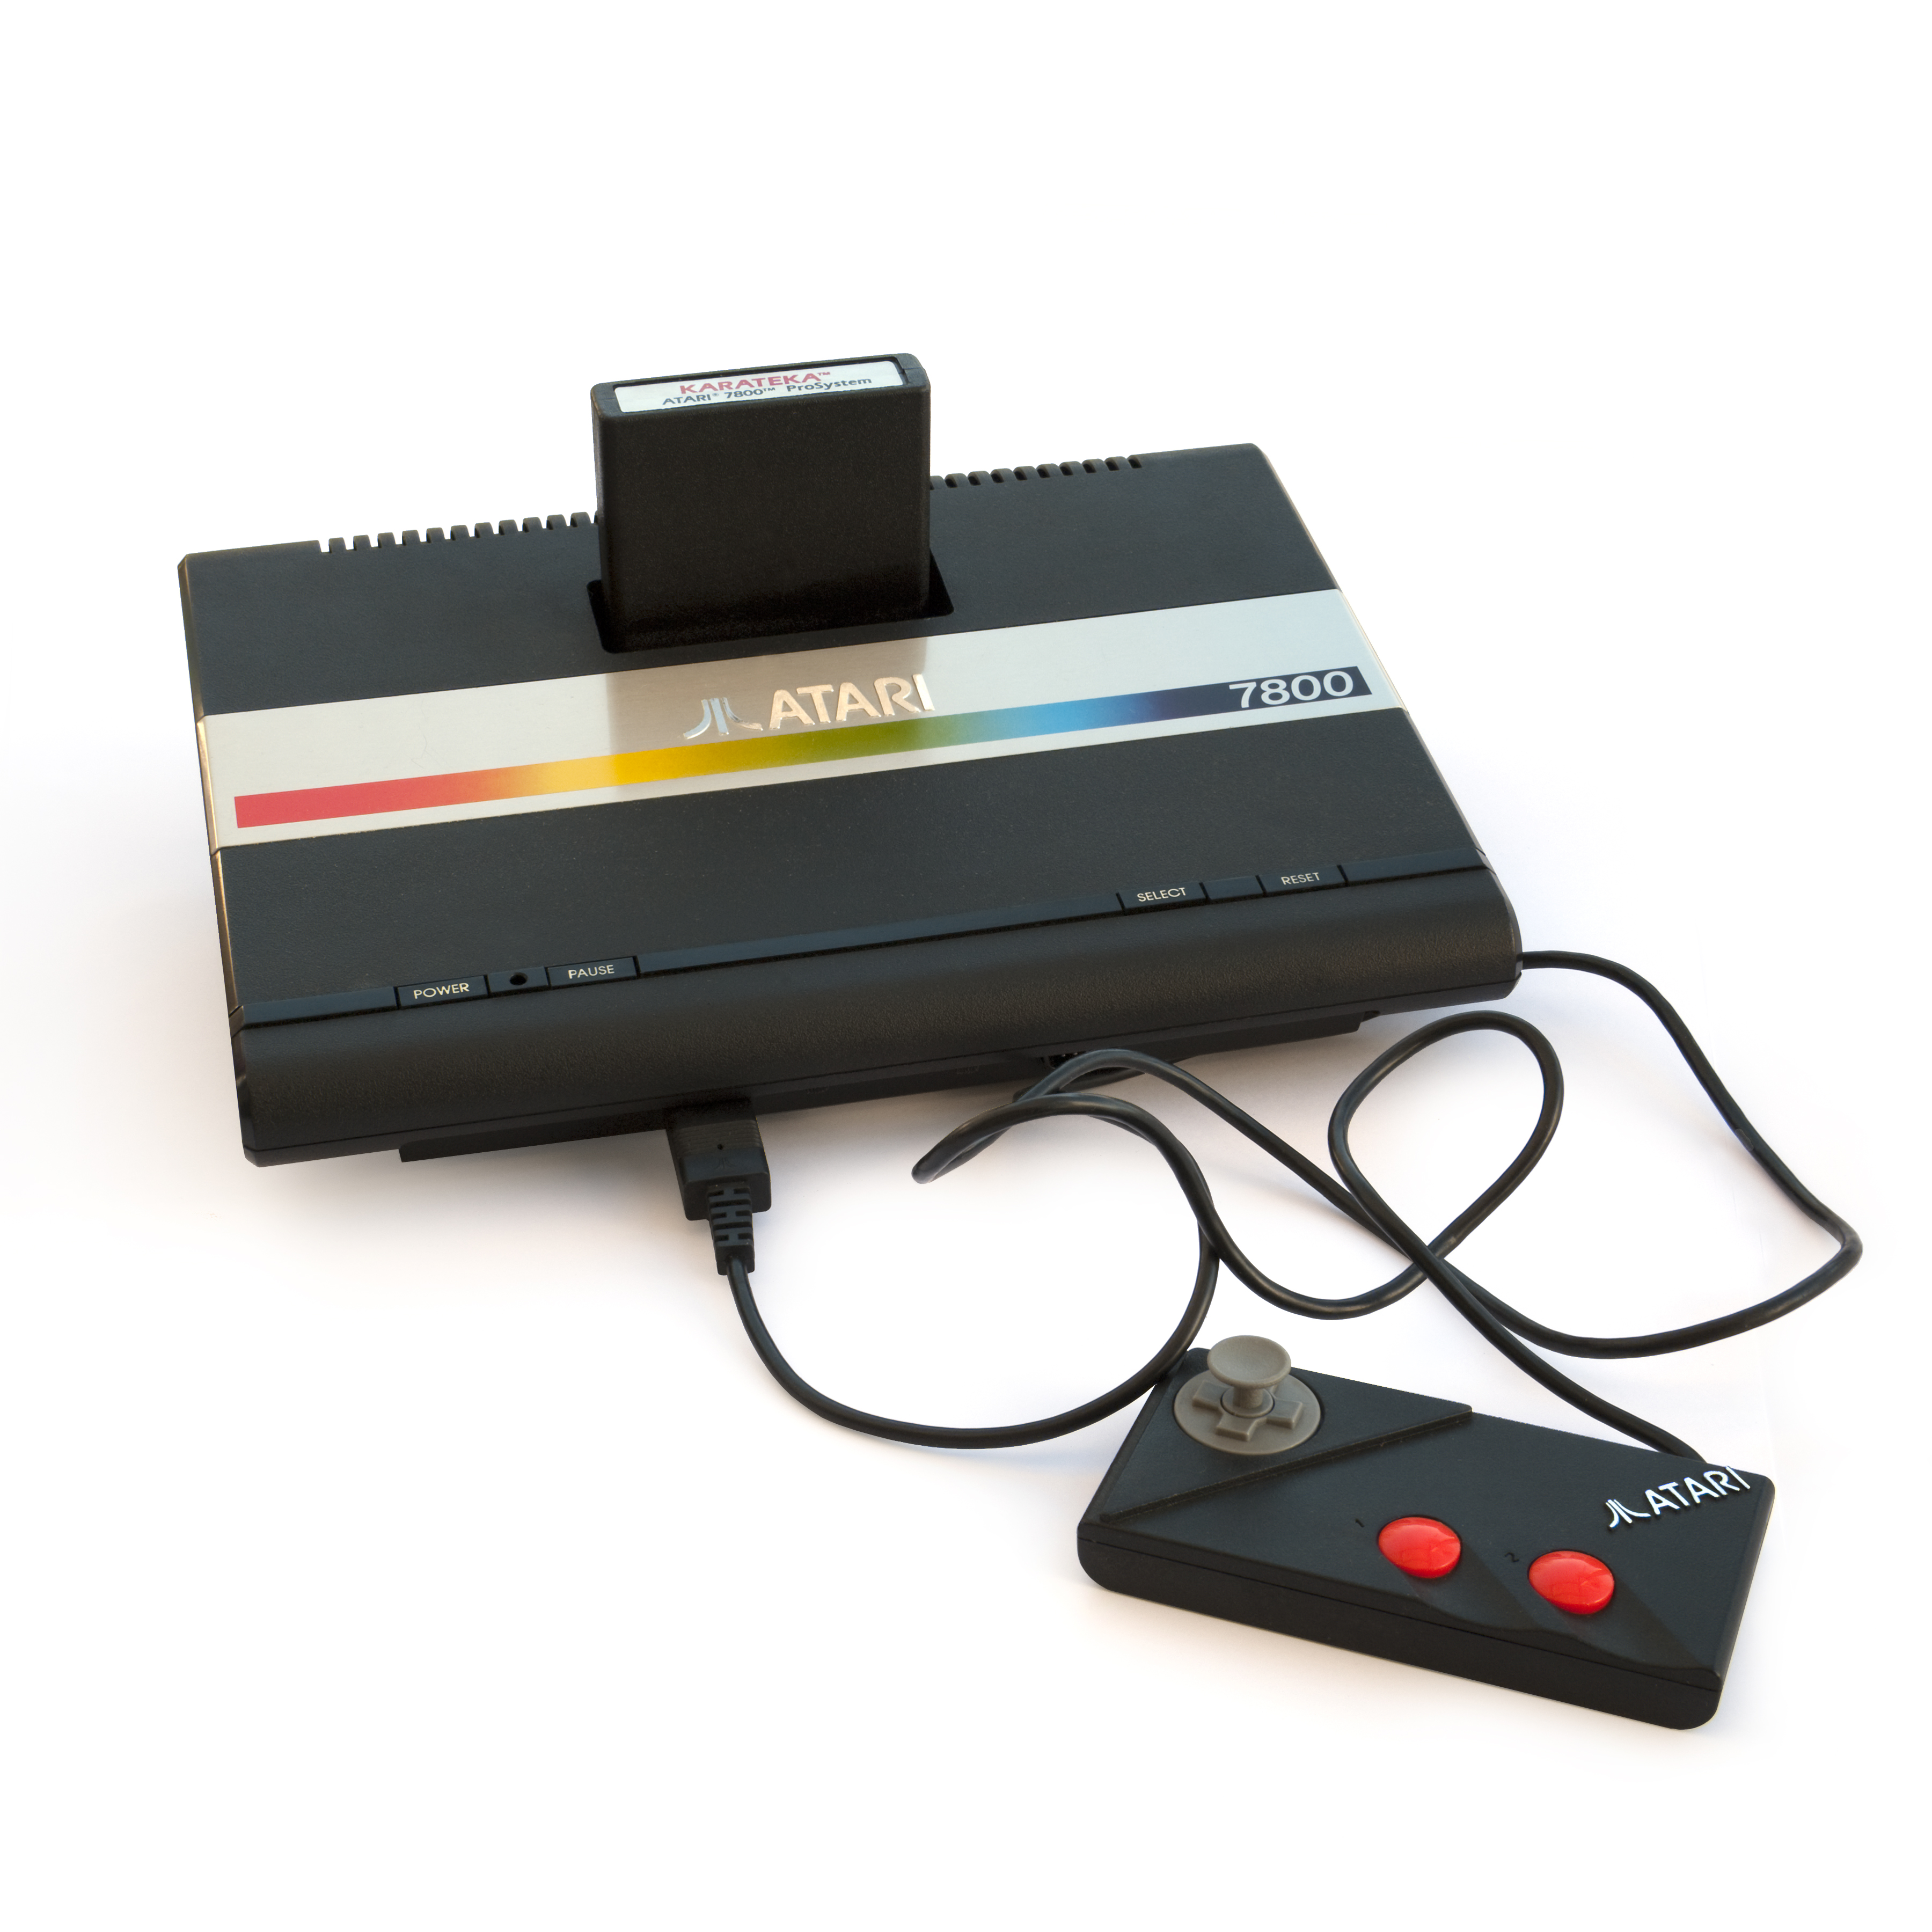 Images of Atari 7800 | 3600x3600